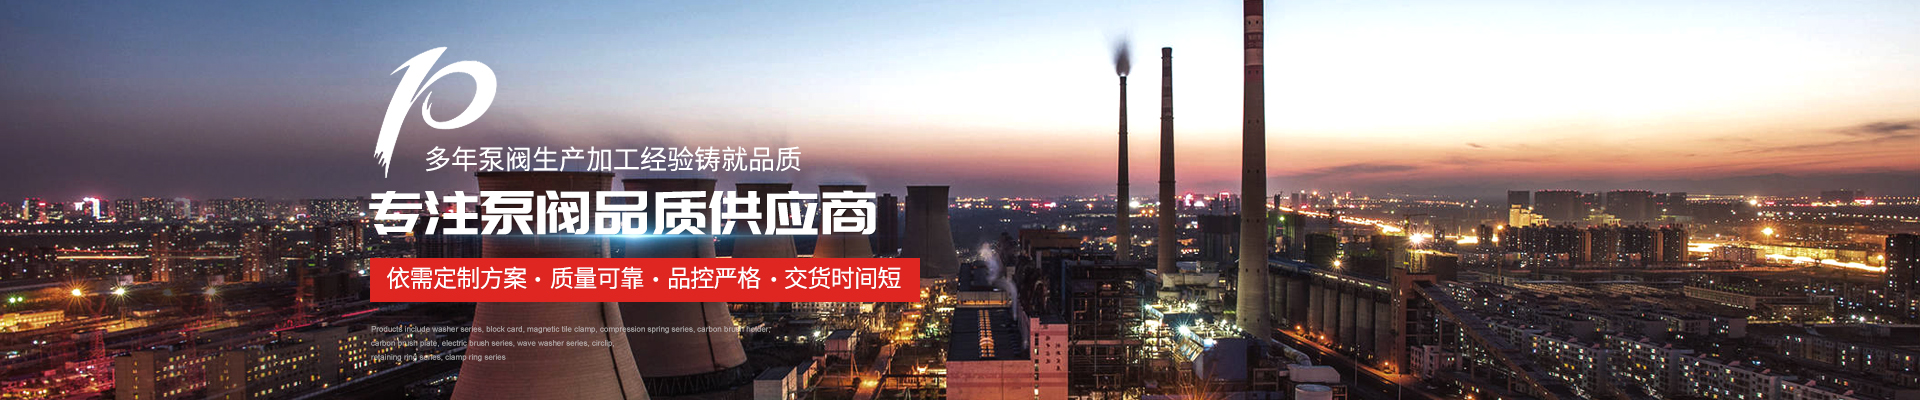 潛水排污泵,3CF巡檢柜公司新聞 - 上海高適泵閥有限公司